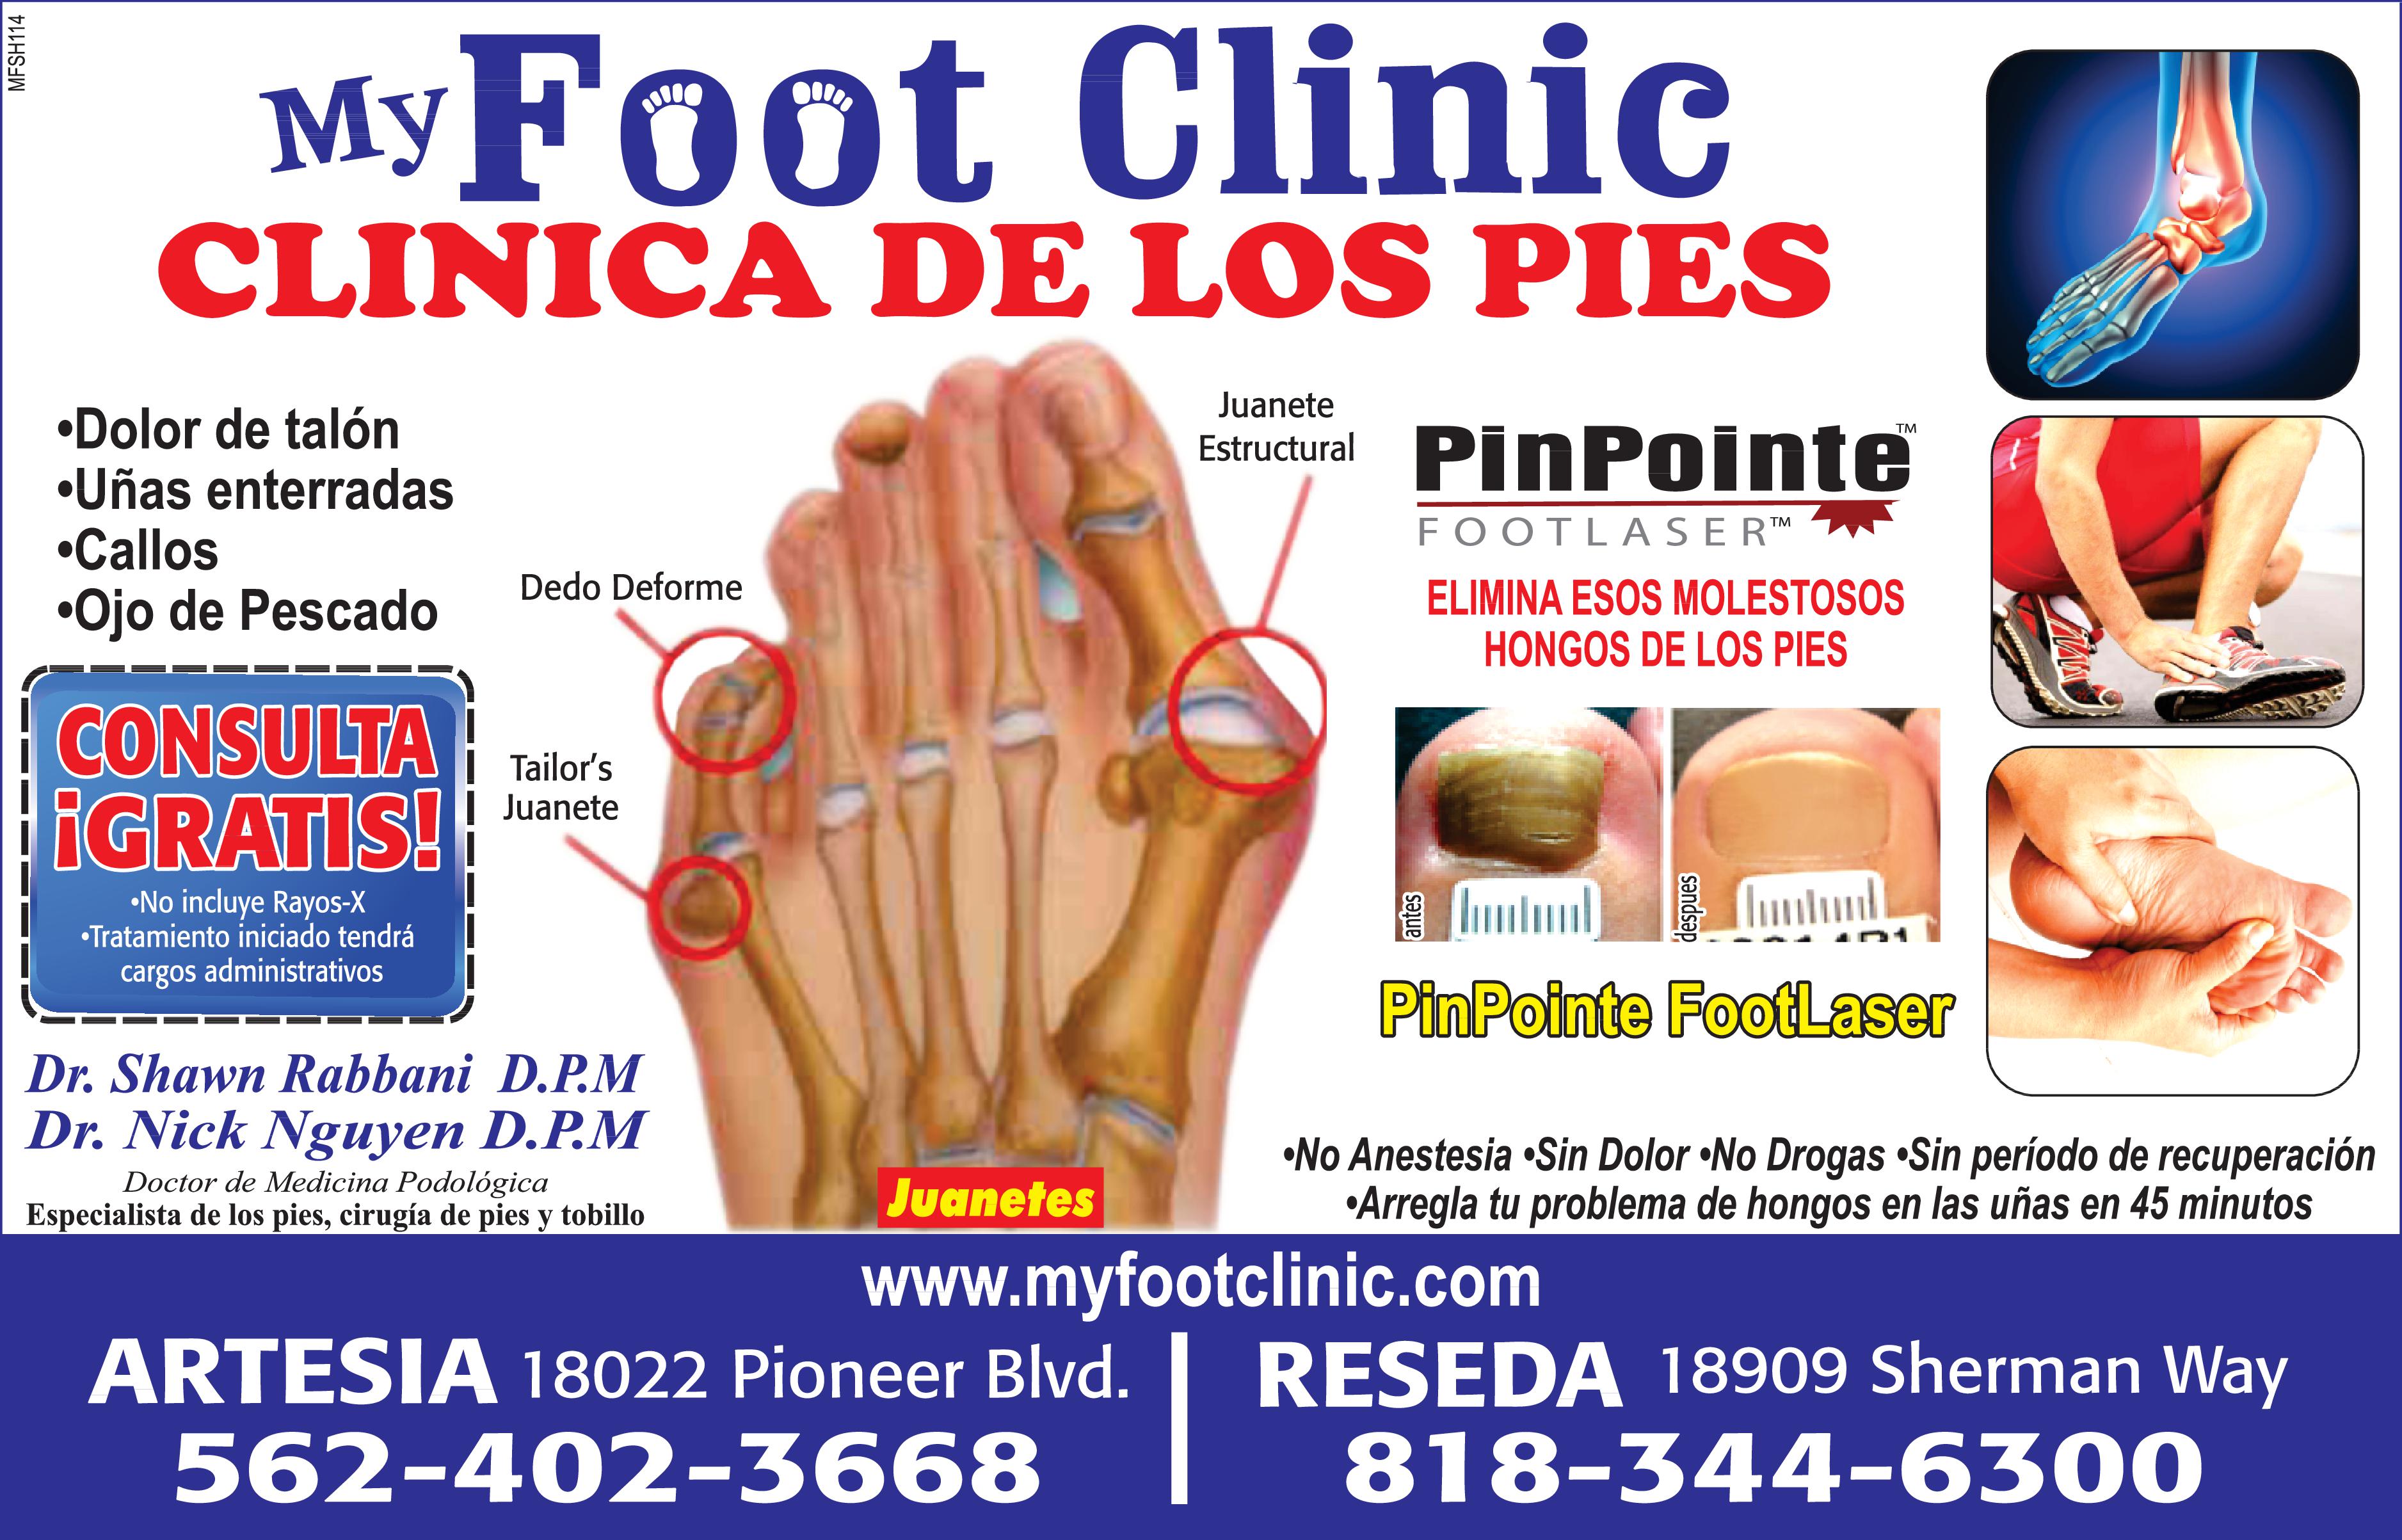 My Foot Clinic. Clinica De Los Pies.